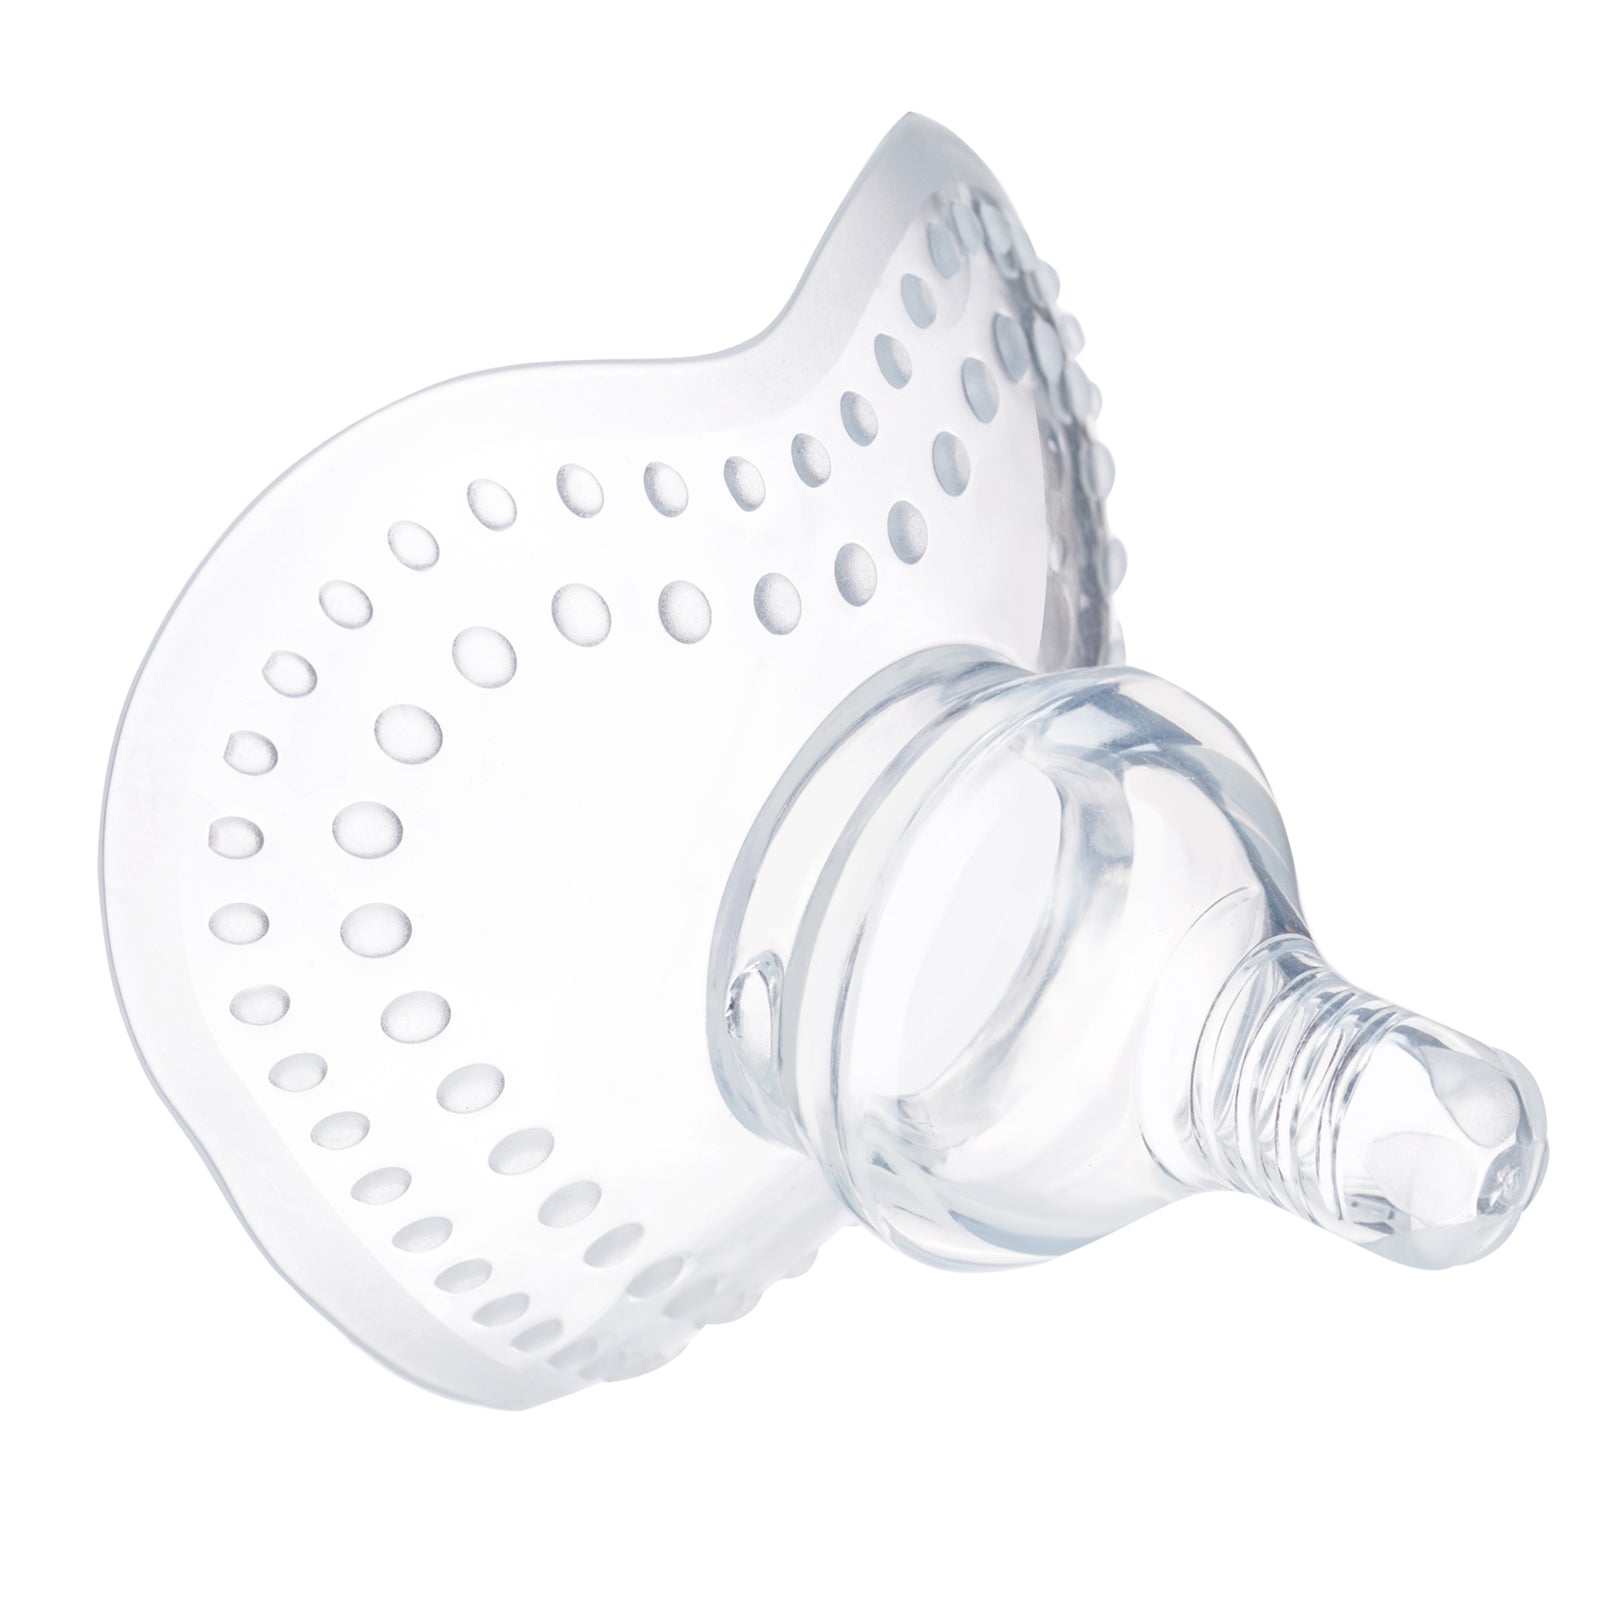 Anti Overflow Breast Shield Nipple Protector Antibacterial